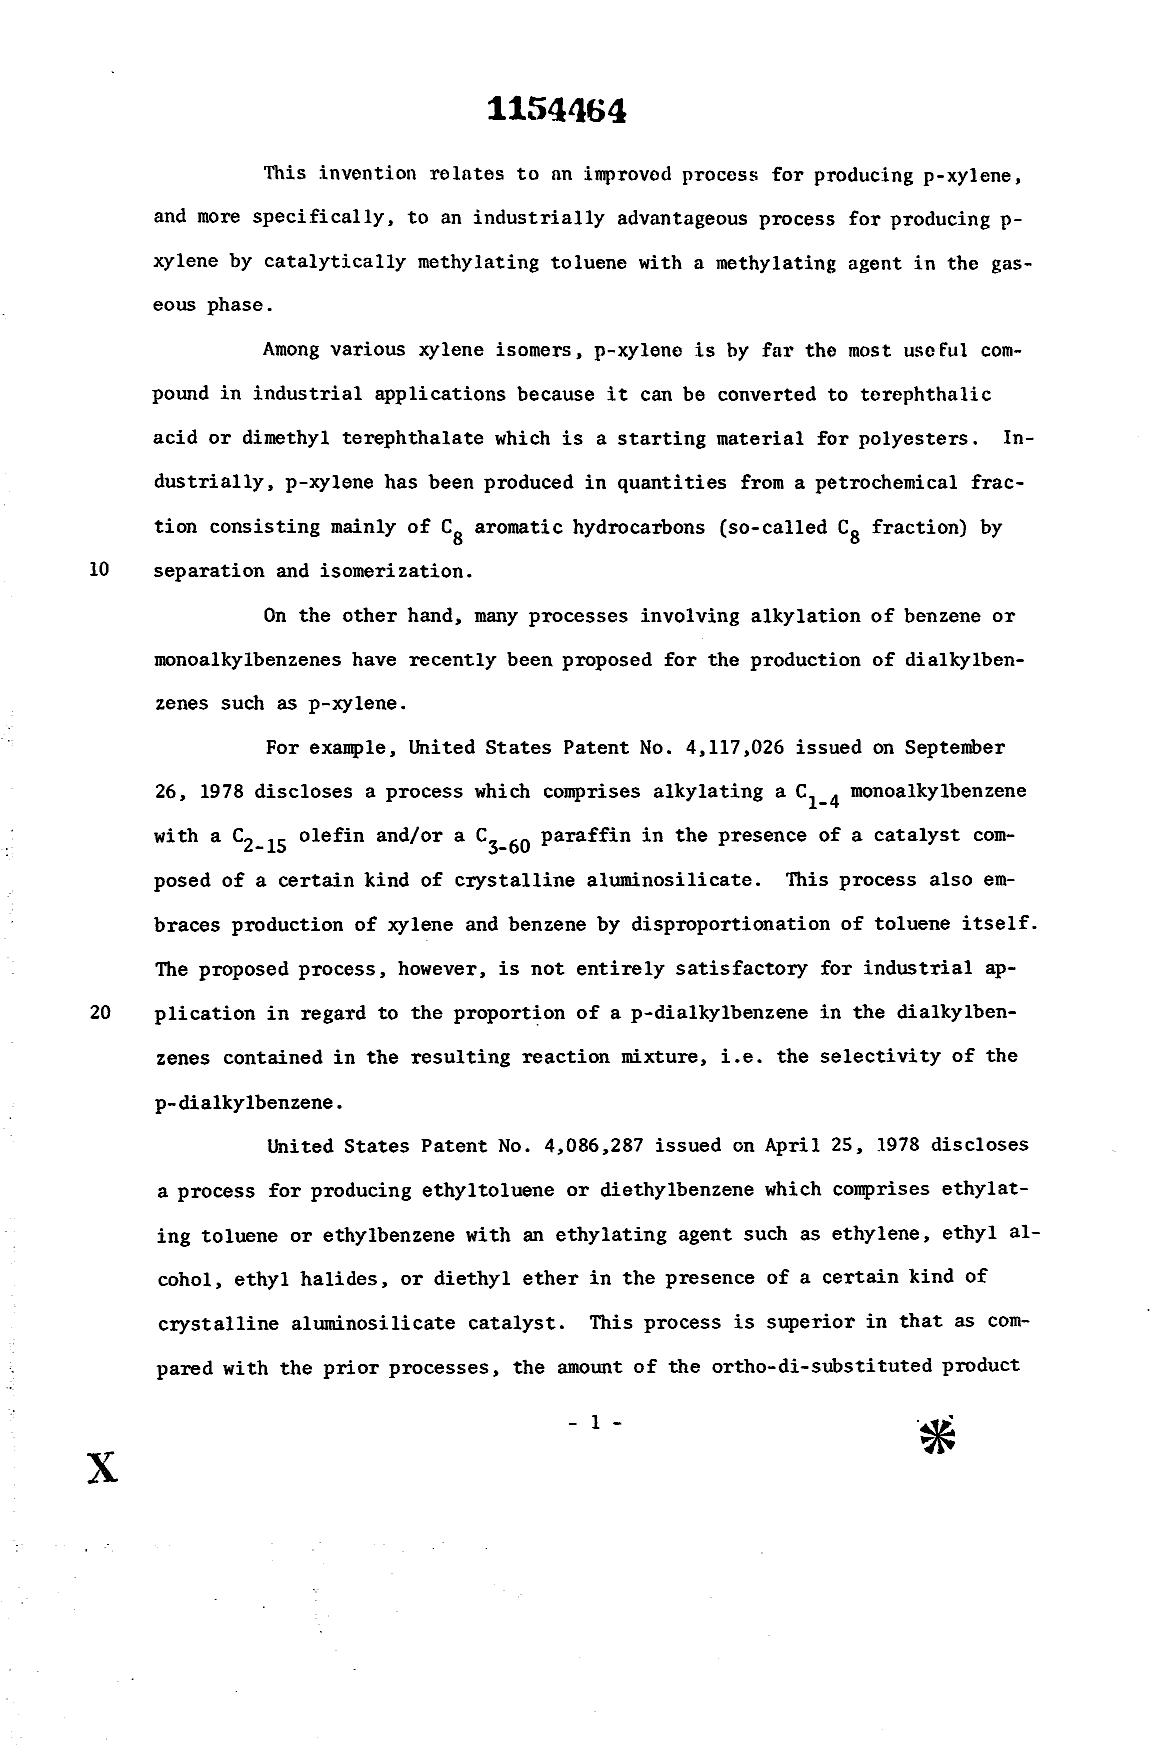 Document de brevet canadien 1154464. Description 19940124. Image 1 de 47